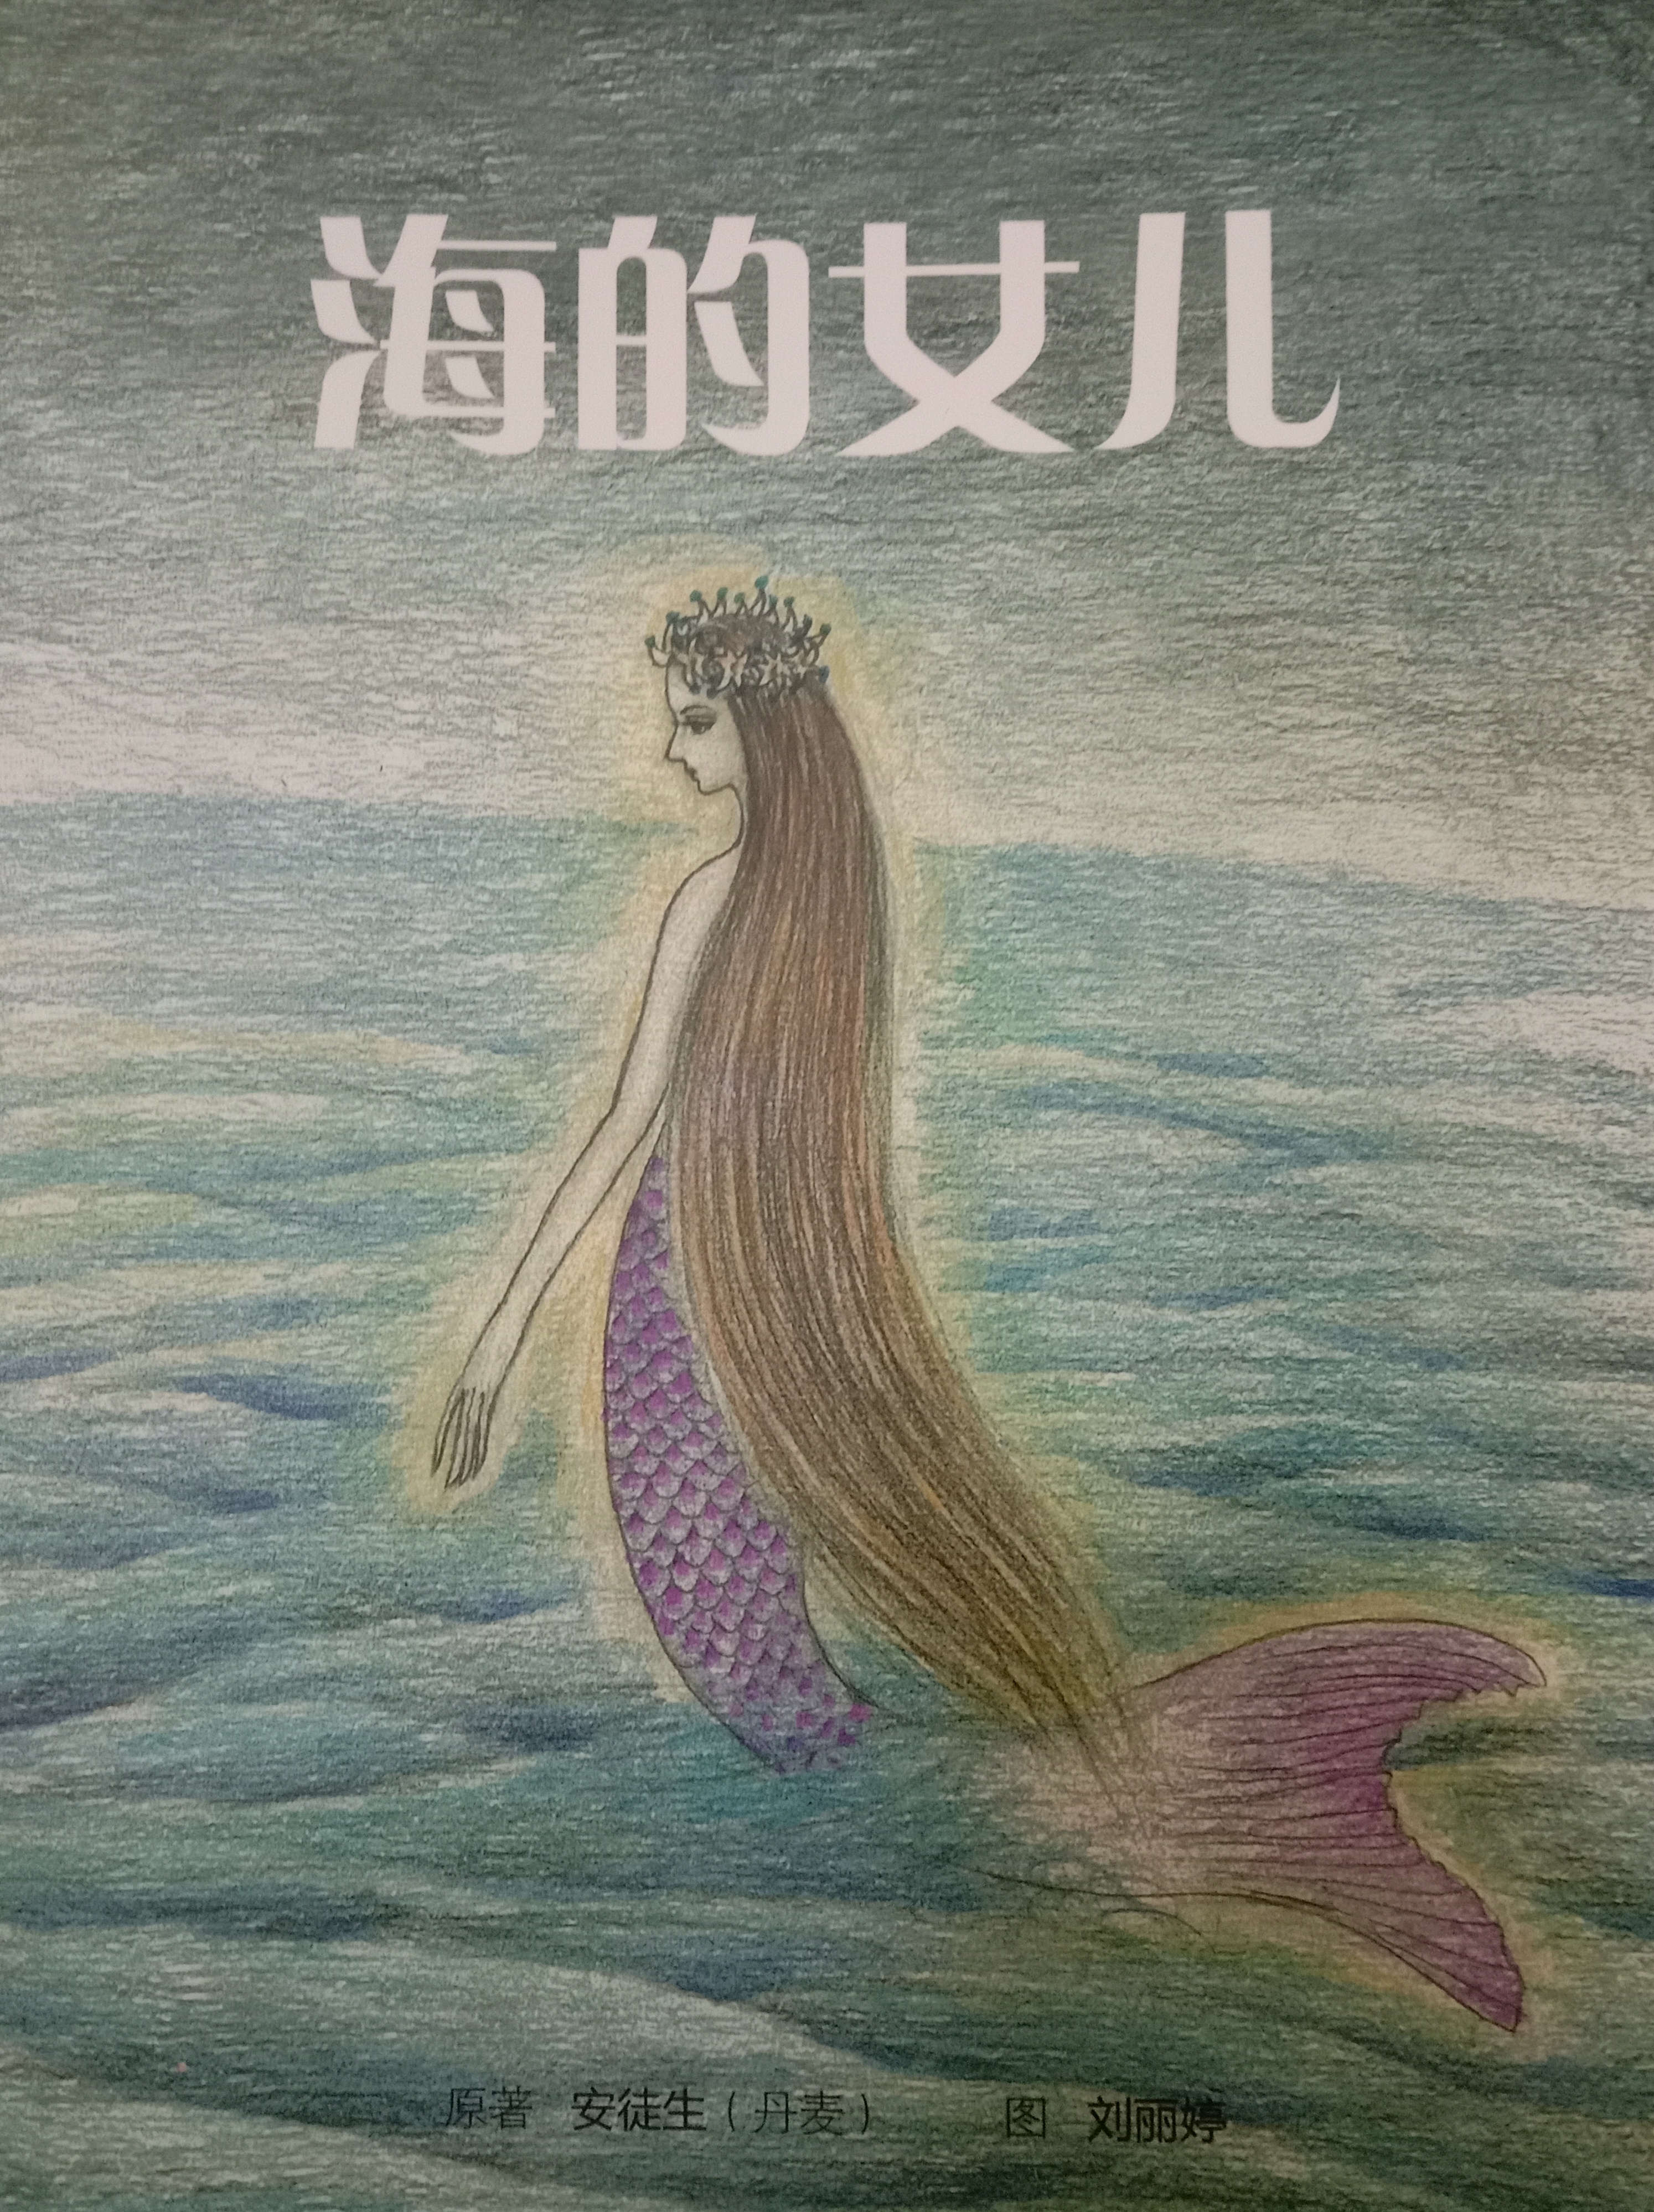 《海的女儿》为纯手绘作品(彩铅),绘者基于纯美的角度来表现故事人物